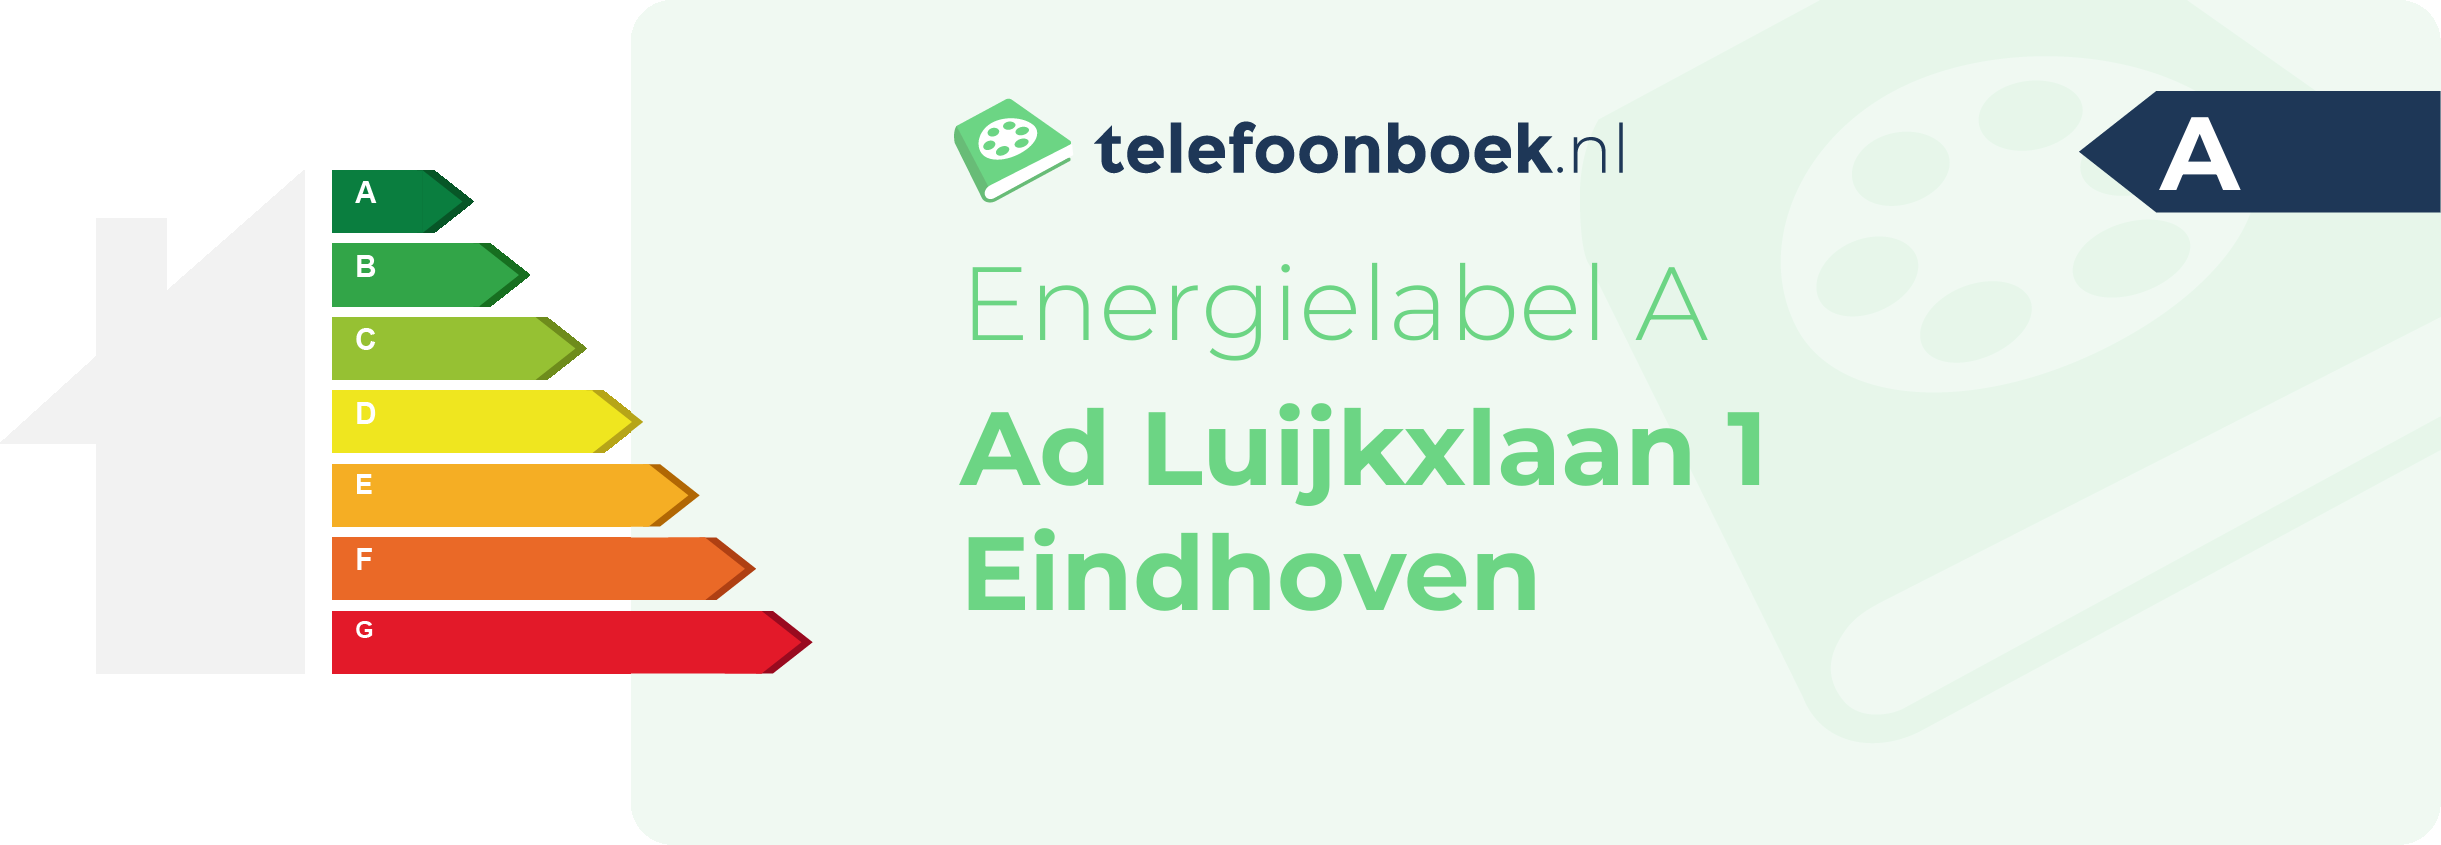 Energielabel Ad Luijkxlaan 1 Eindhoven